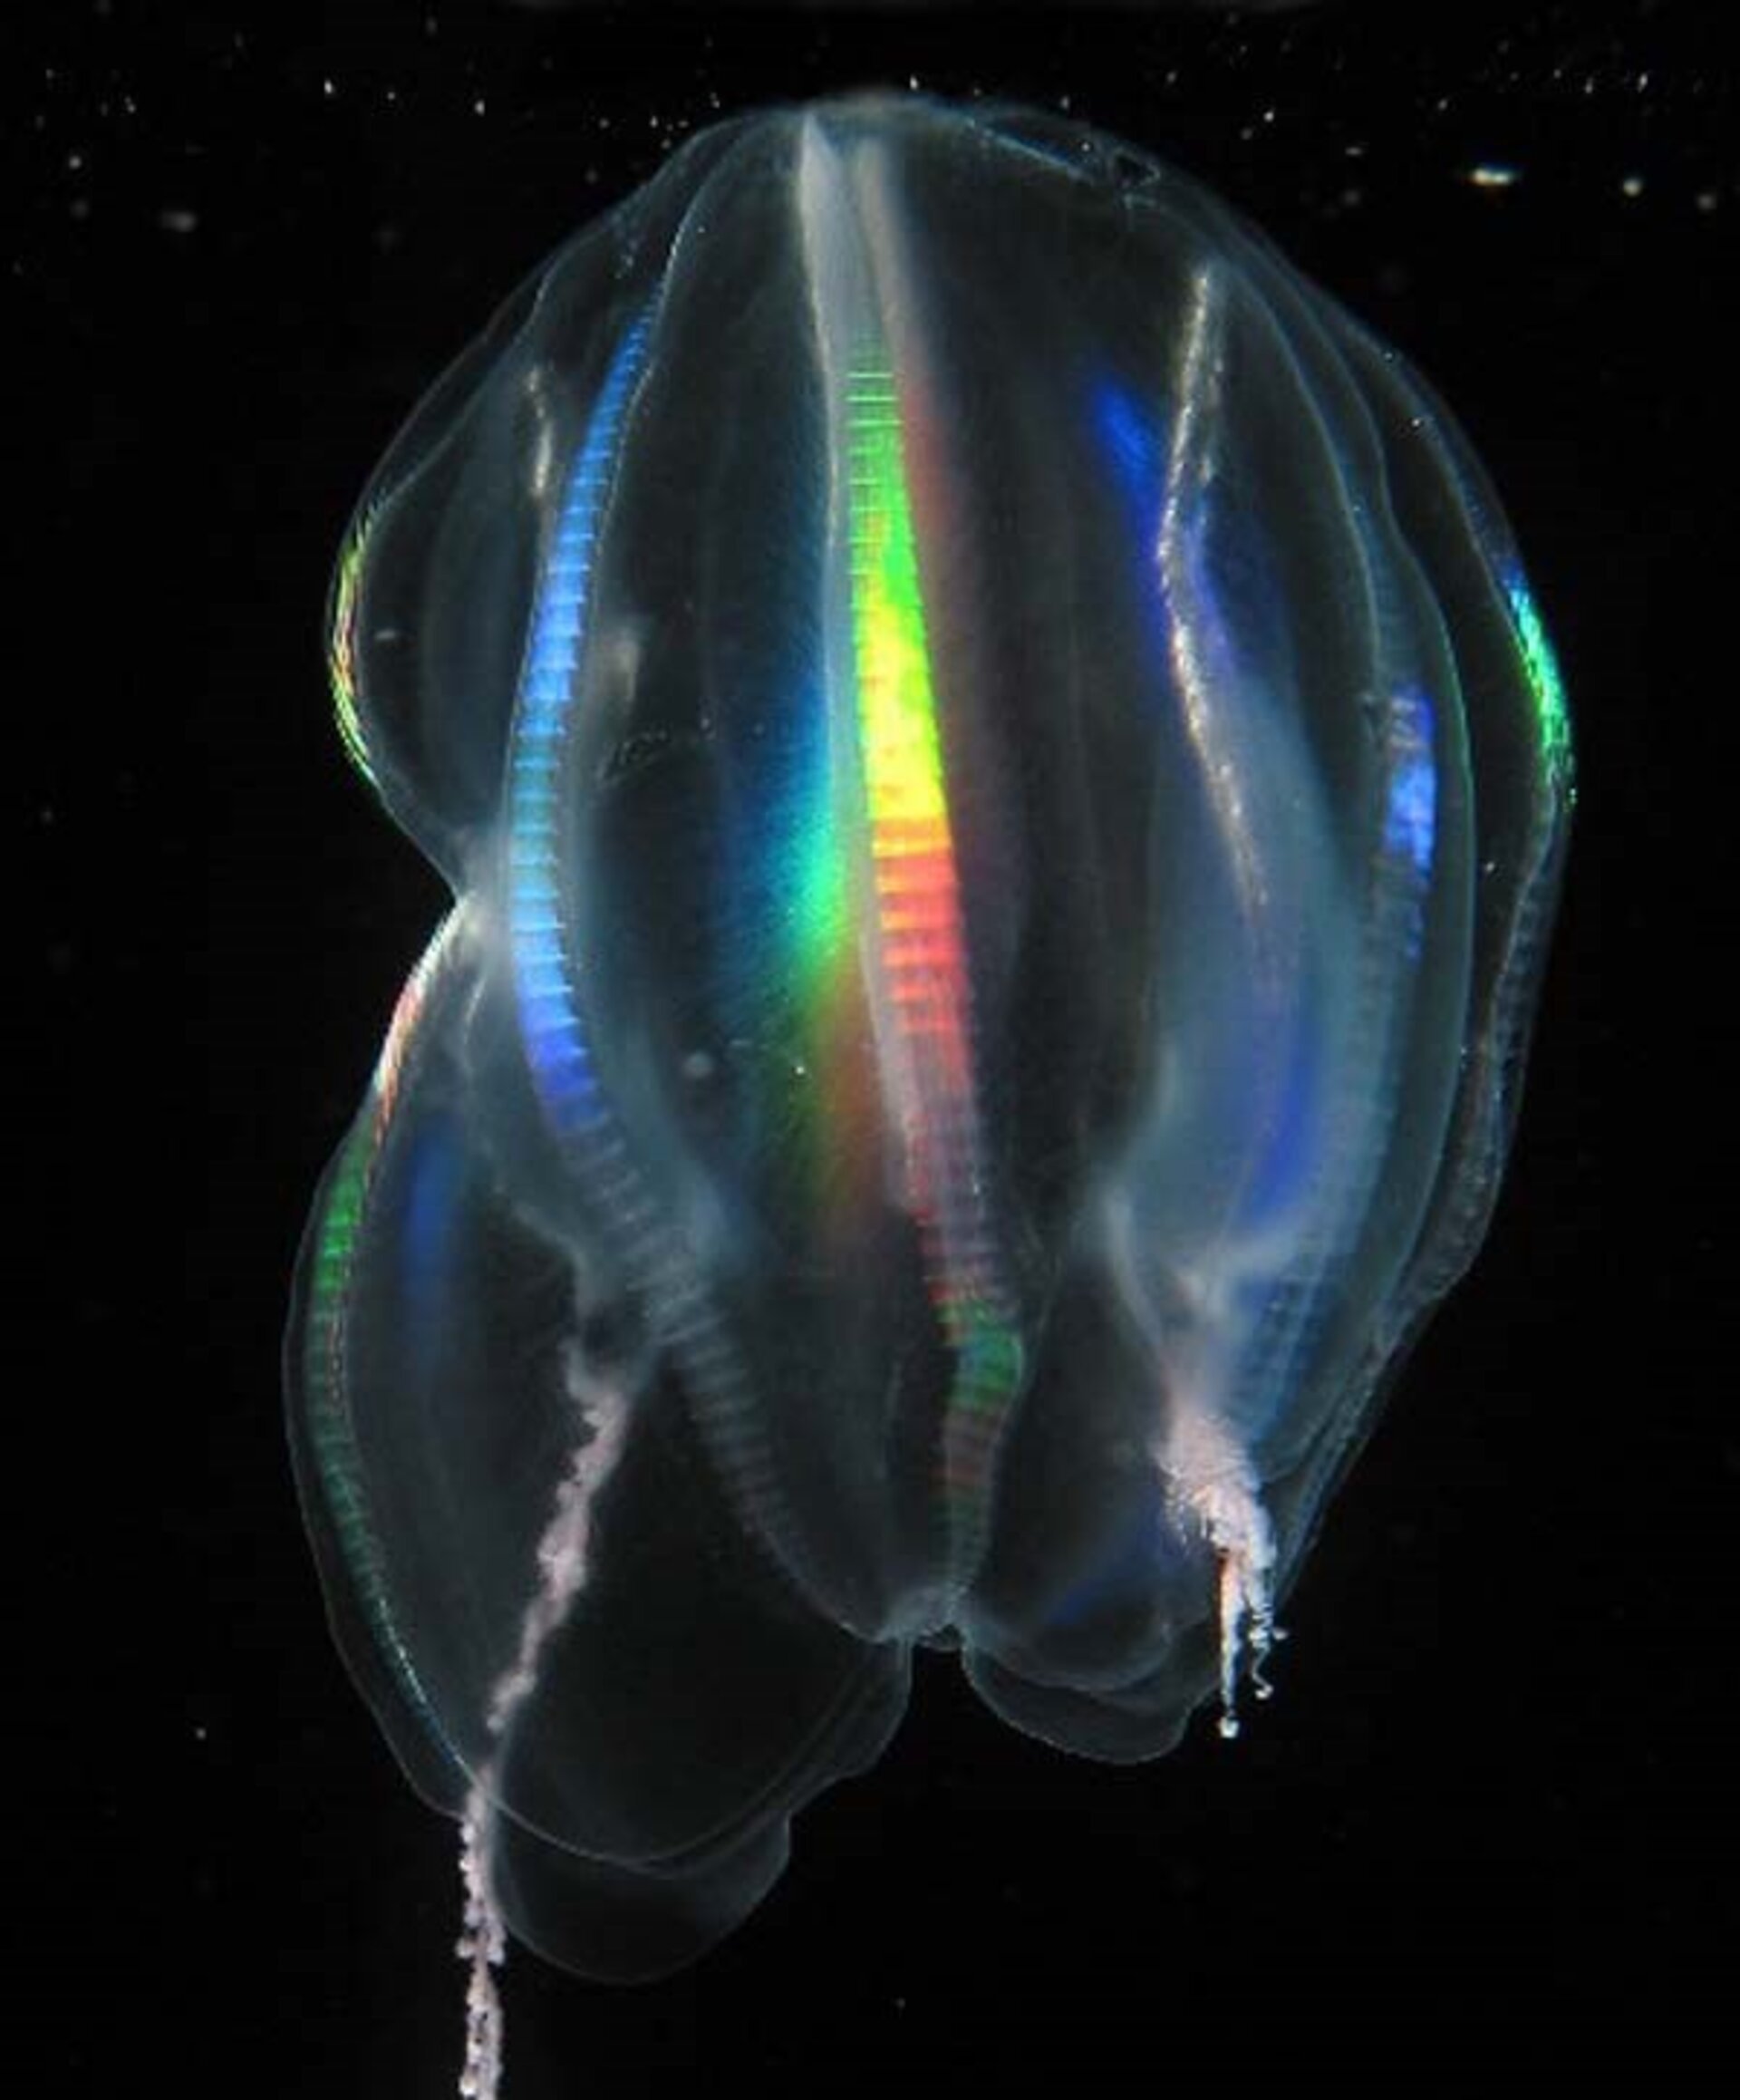 Comb jellies